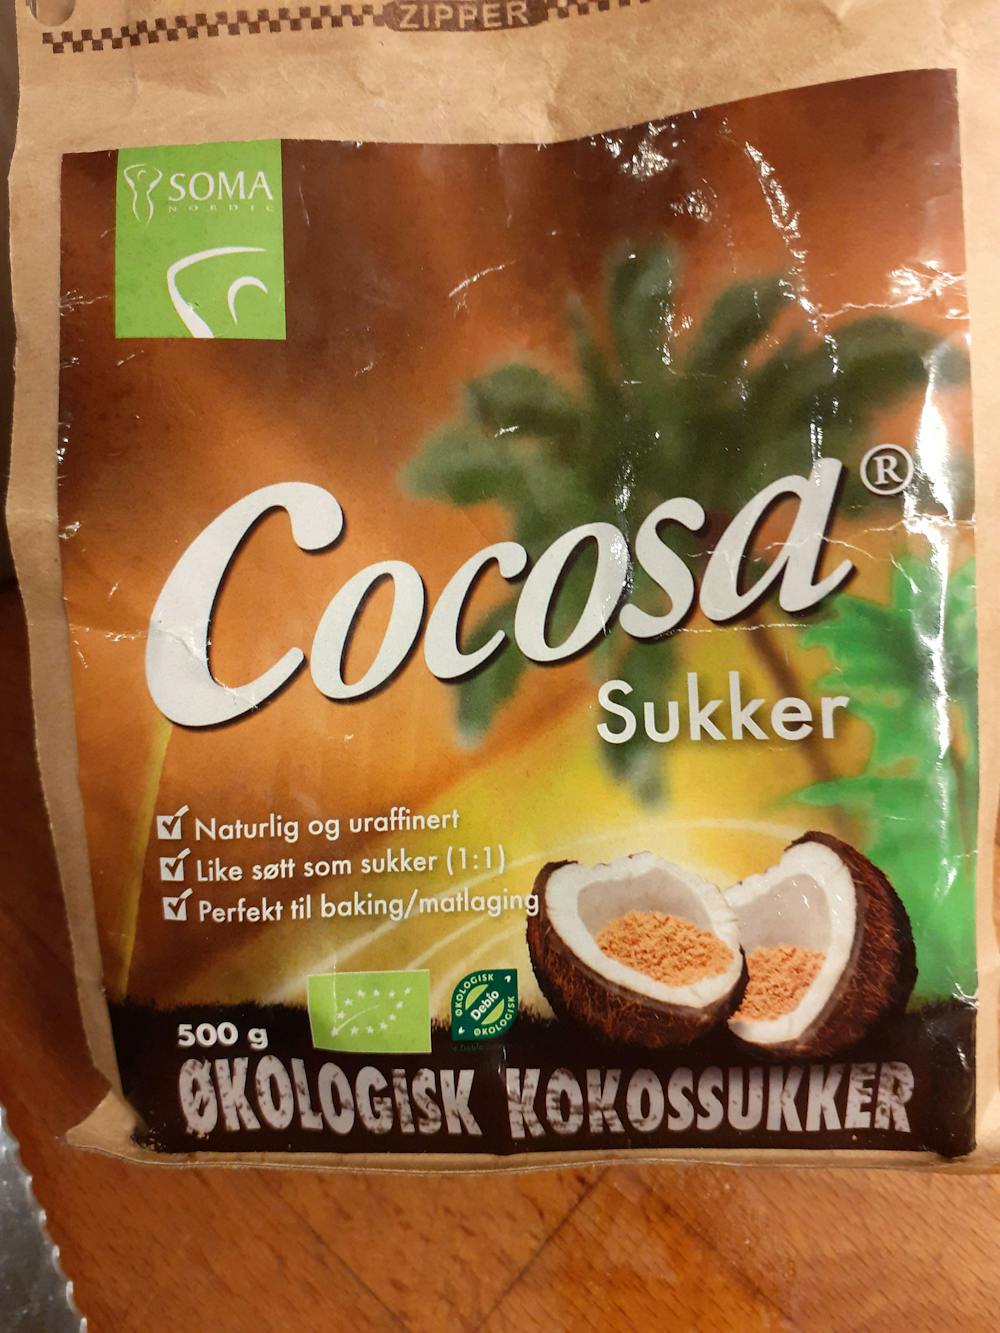 Cocosa sukker, Soma